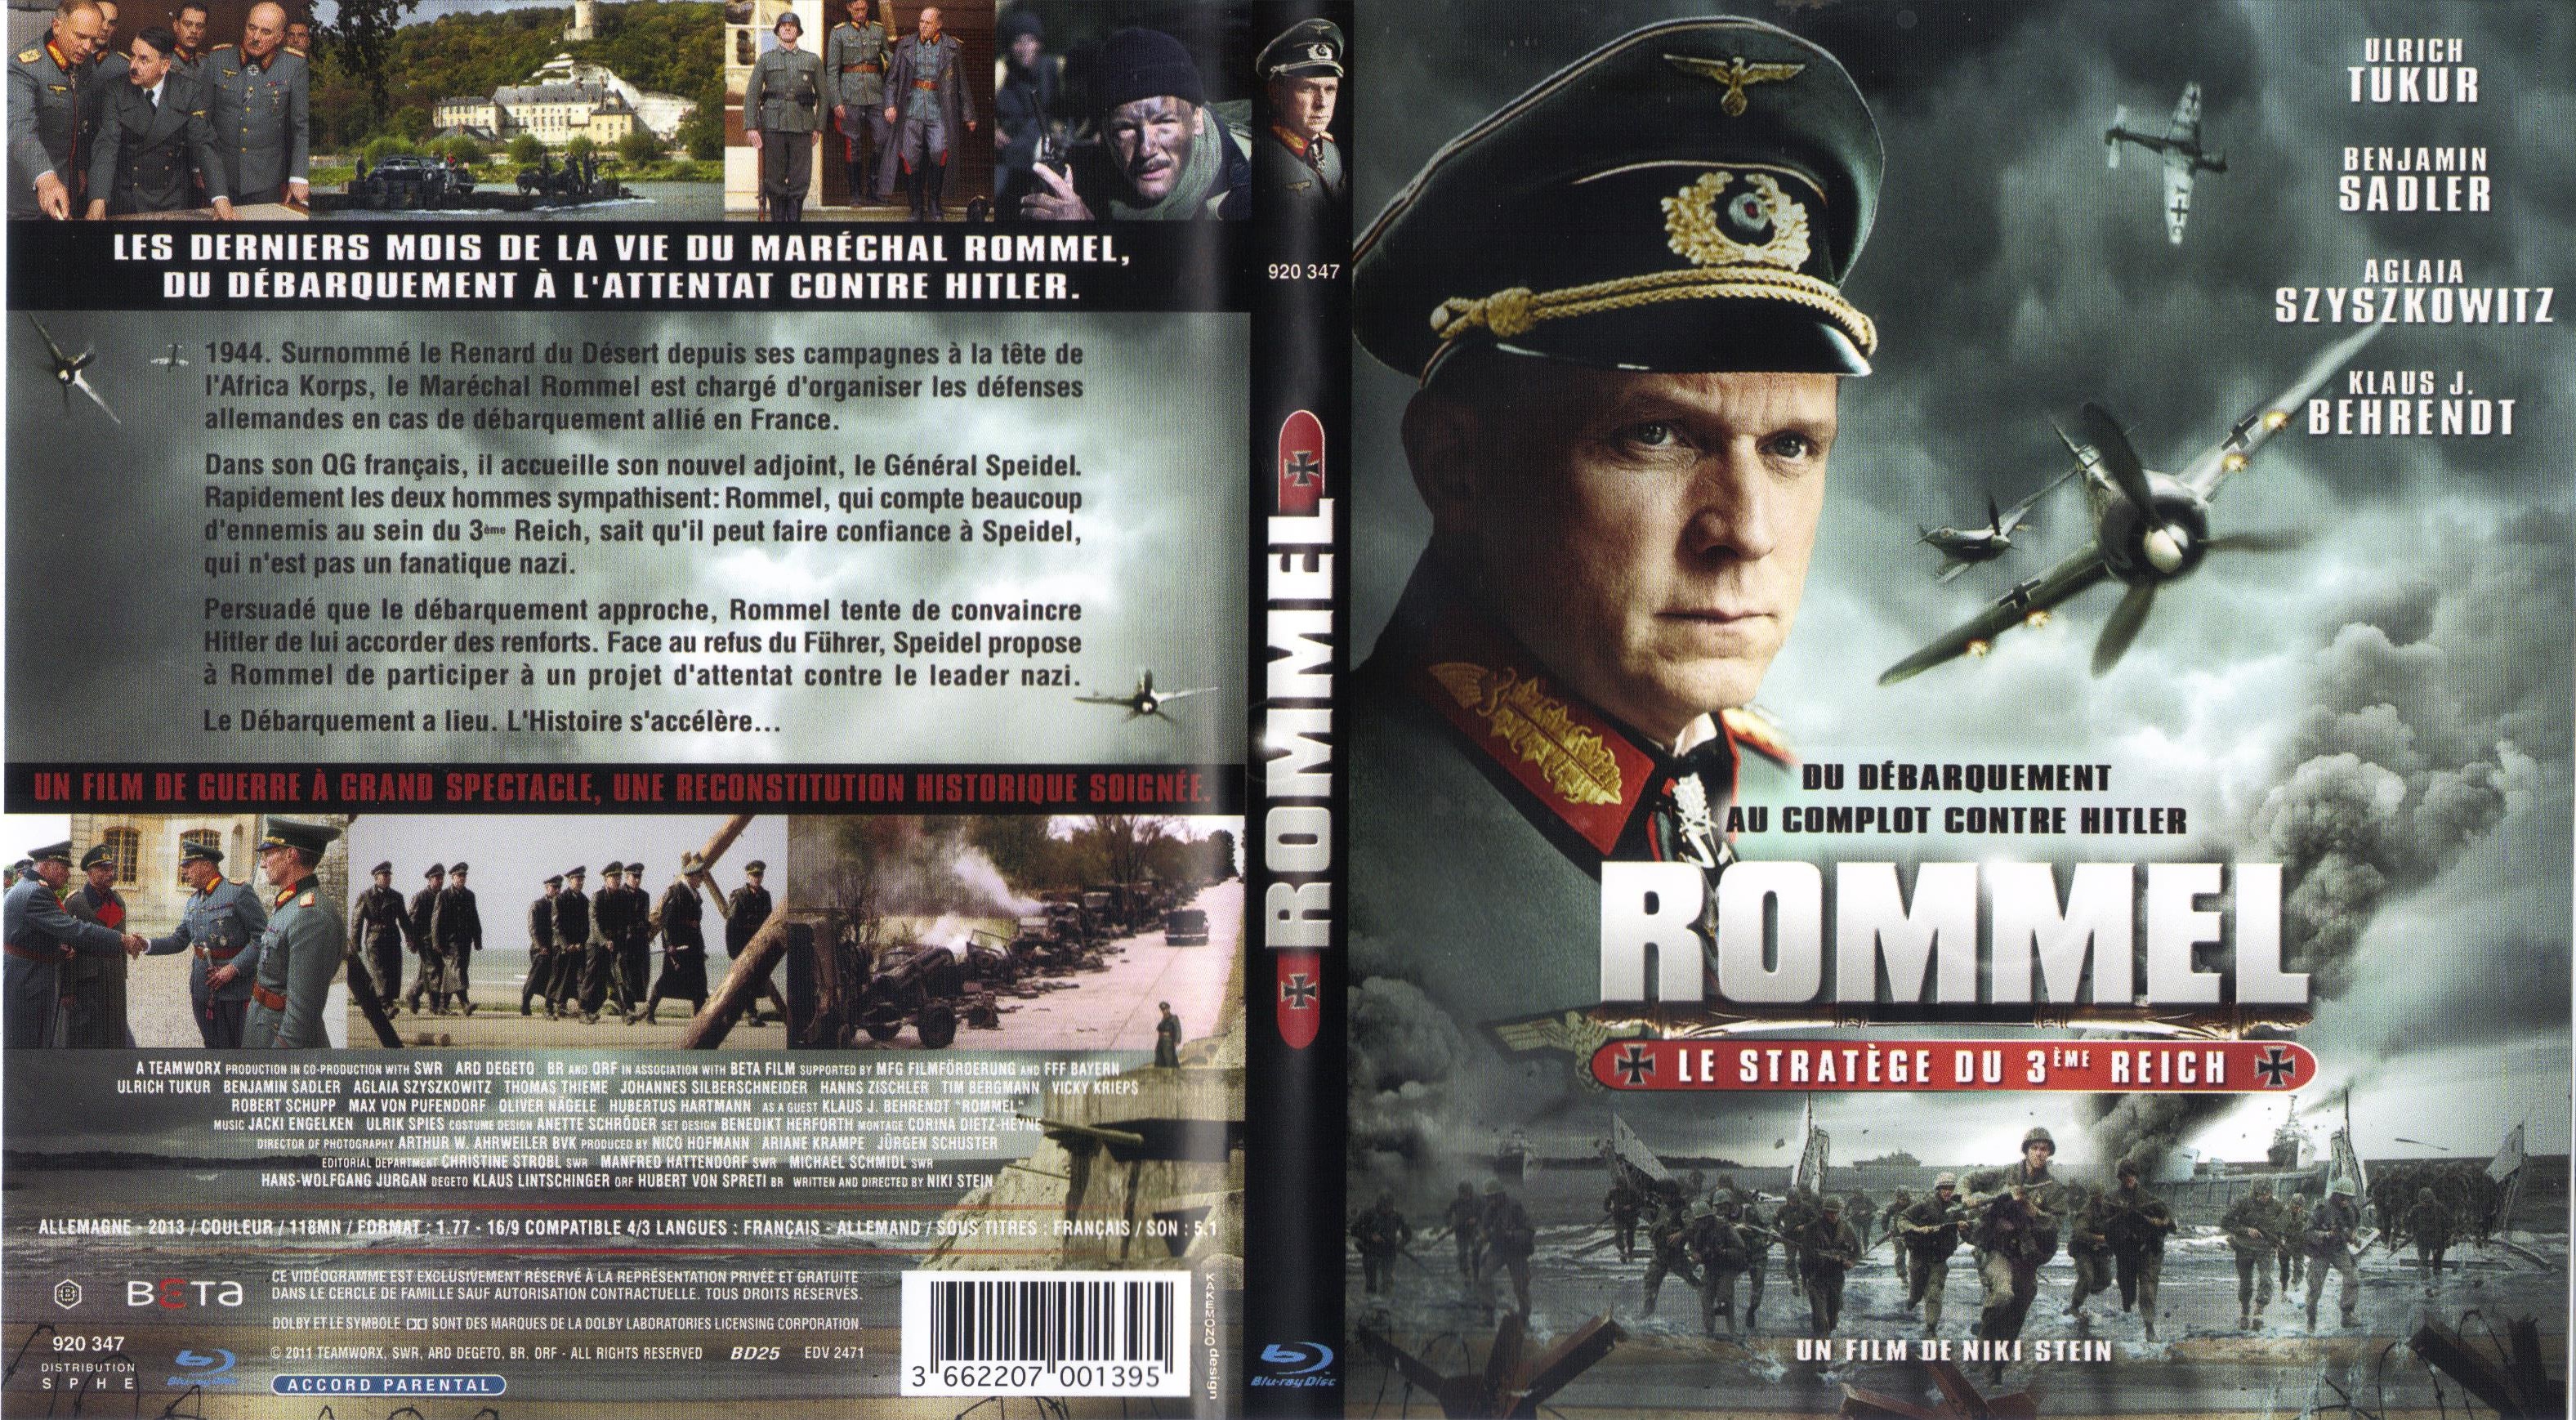 Jaquette DVD Rommel le stratge du 3me Reich (BLU-RAY)